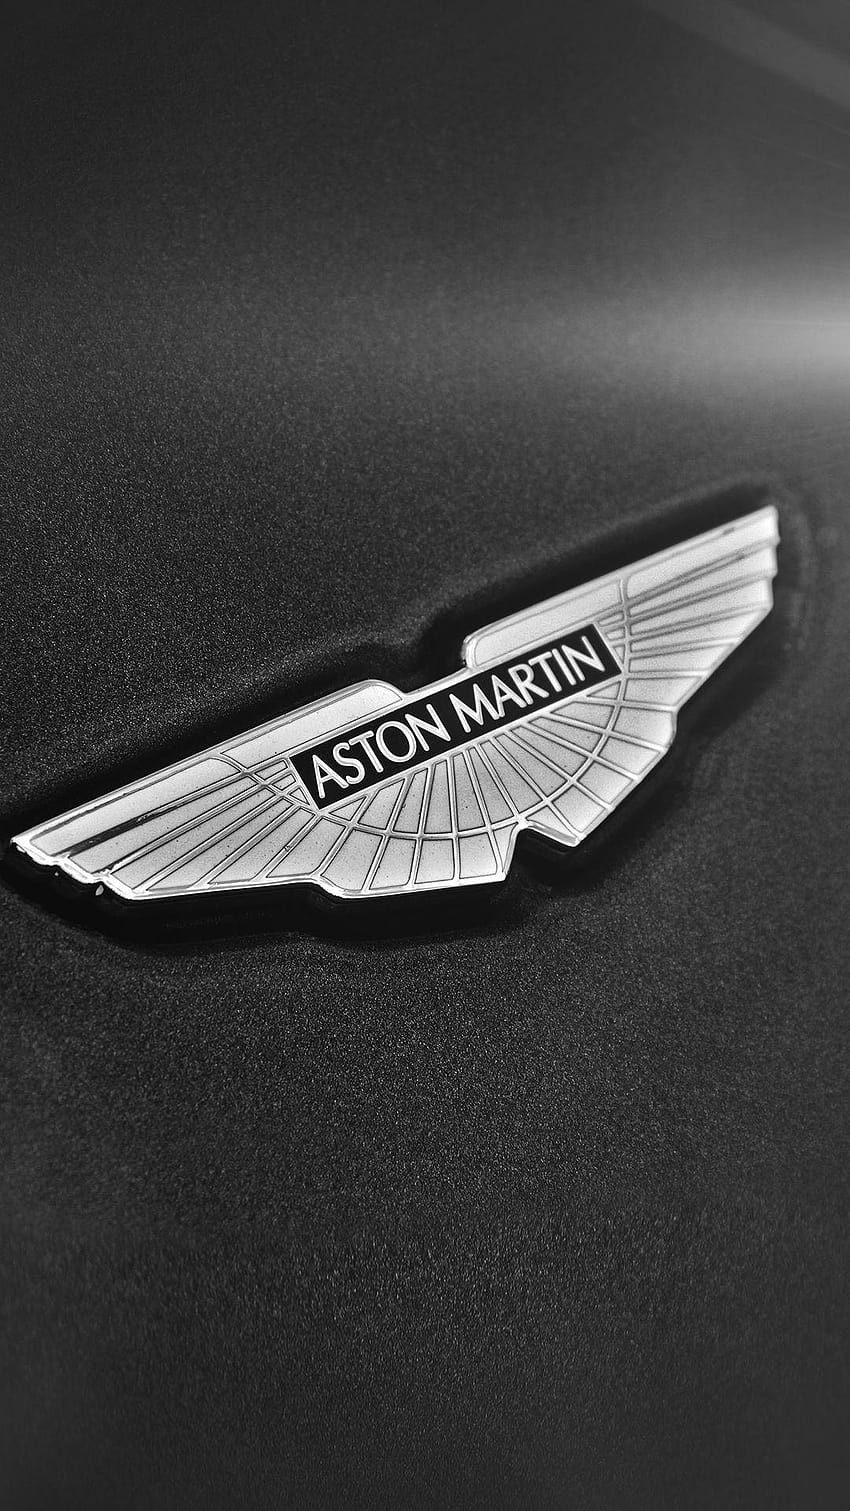 シンプルな Aston Martin ロゴ 暗い背景 iPhone 6 HD電話の壁紙